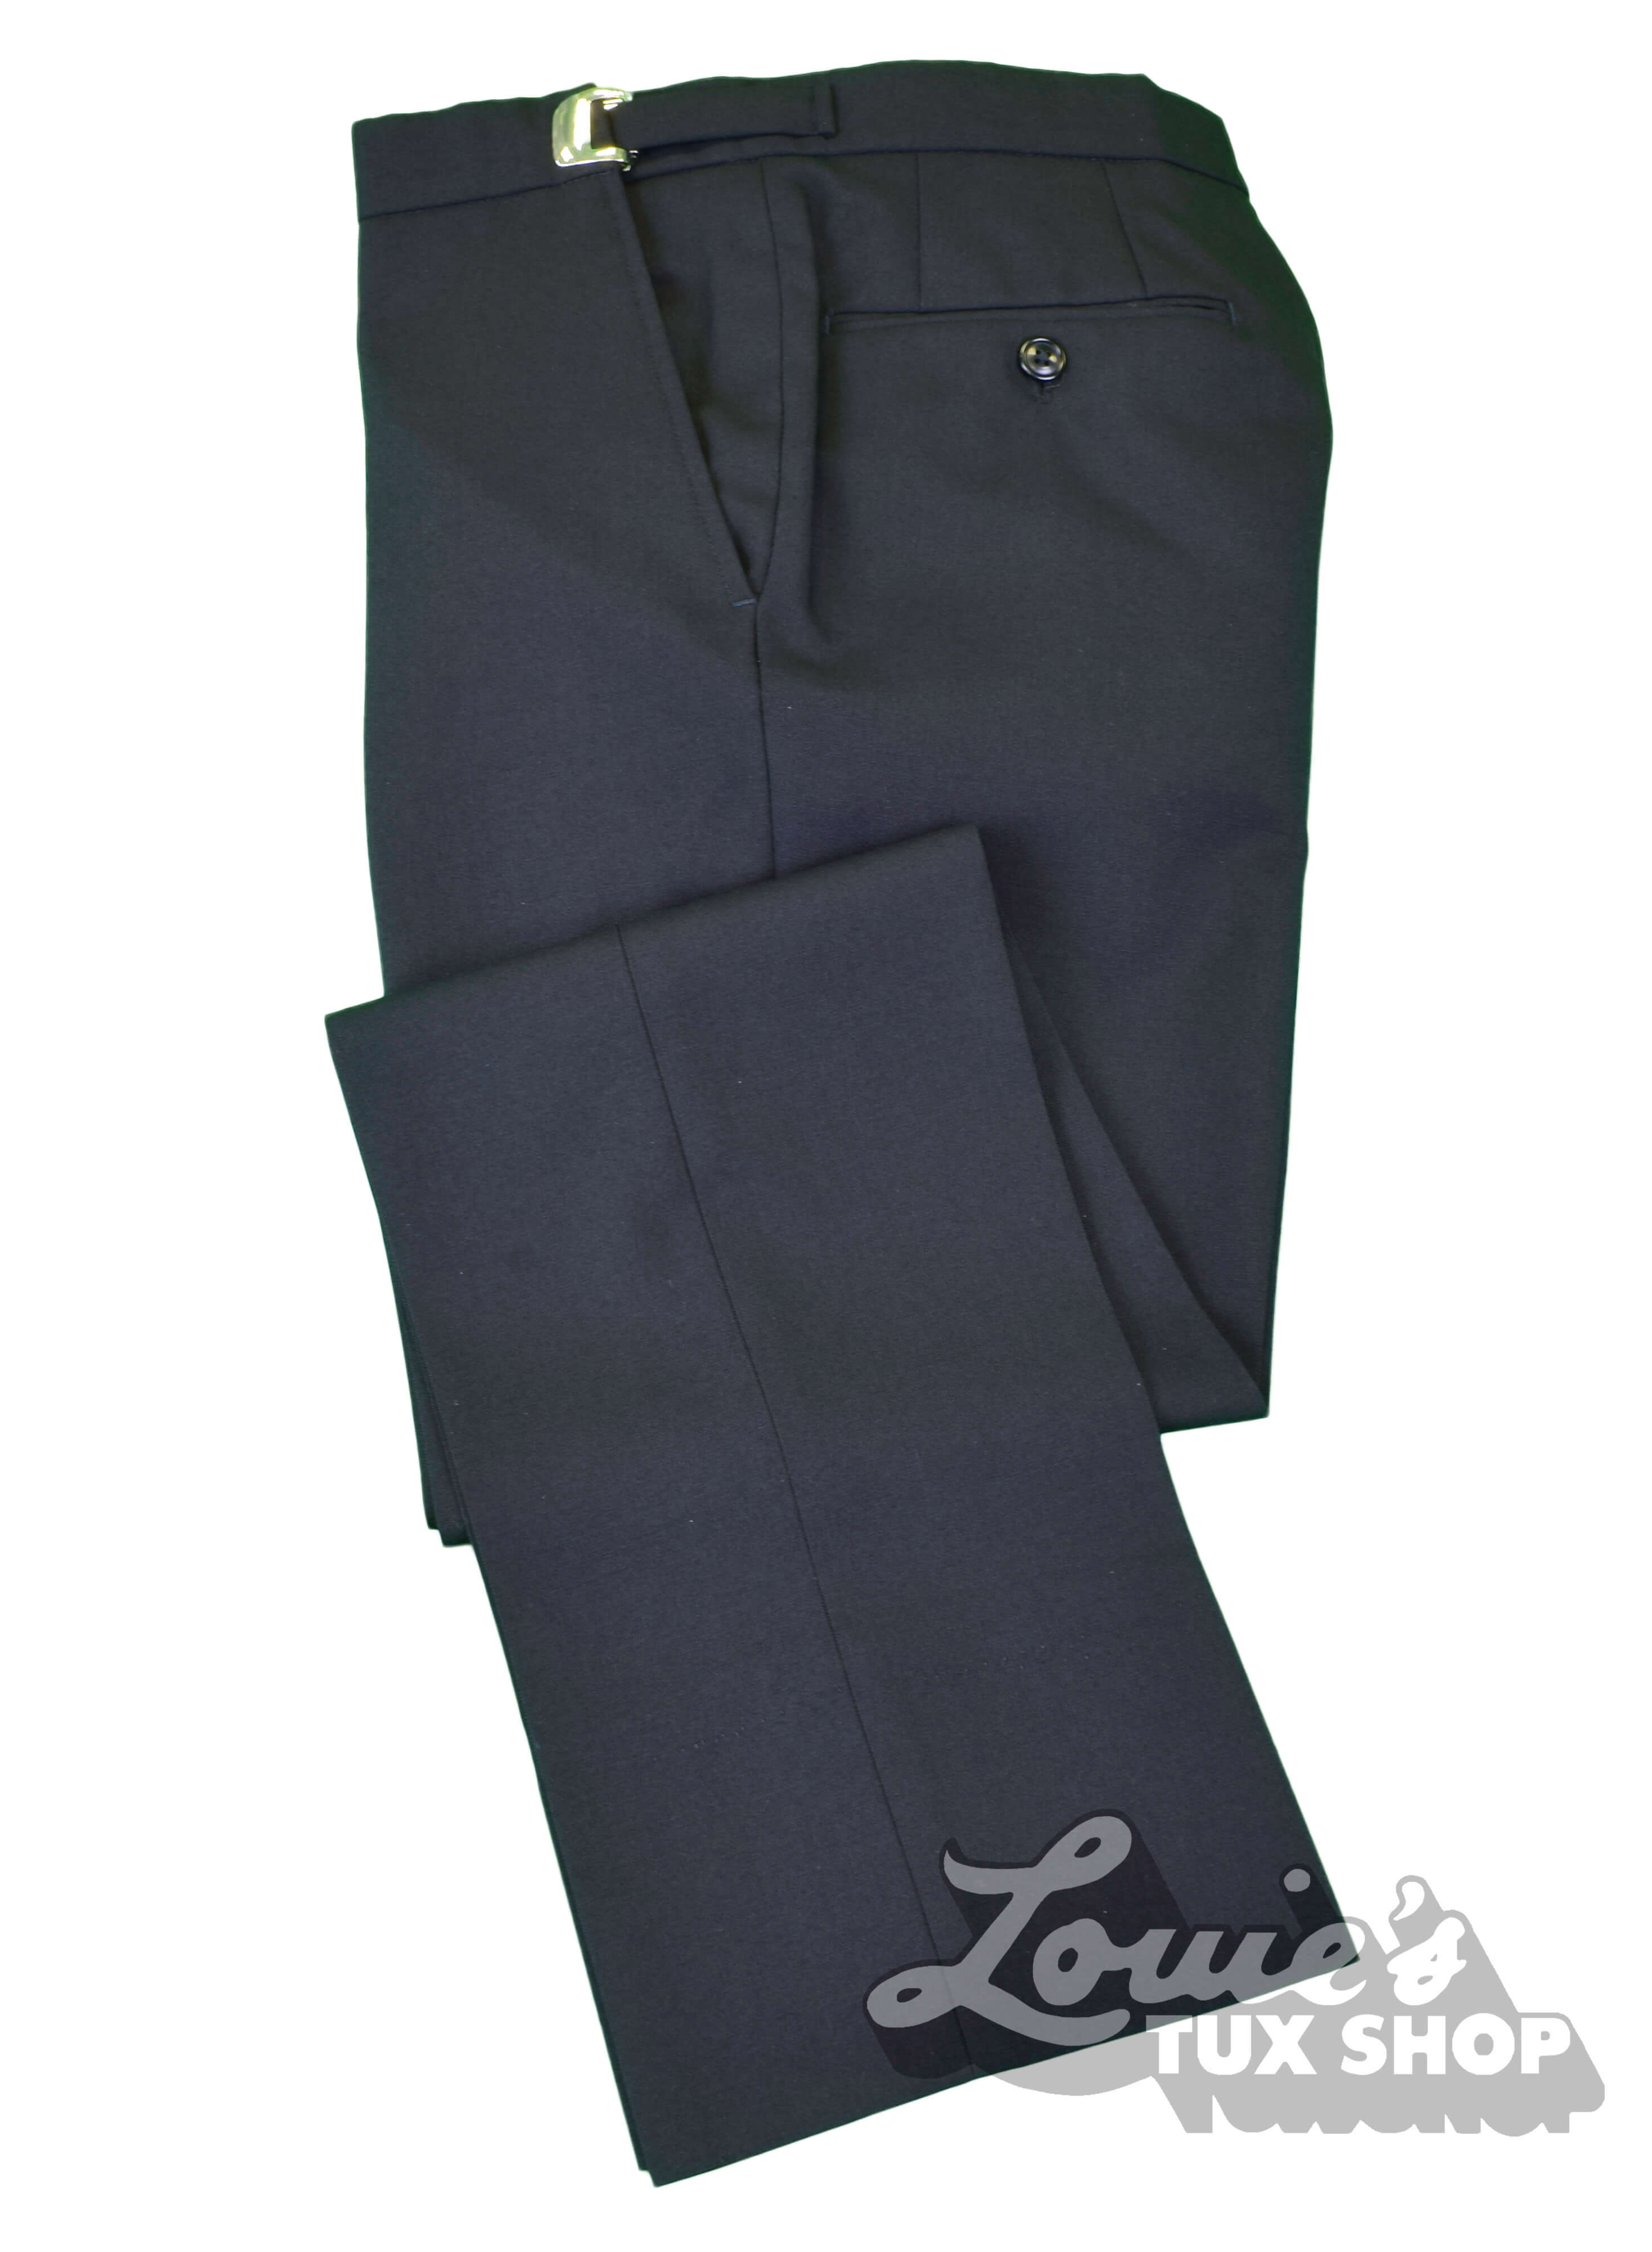 DTI Men's Suit Classic Fit Dress Pants Separates Slacks Pleated Trouser  Black (30W x 32L, Black) at Amazon Men's Clothing store: Business Suit Pants  Separates